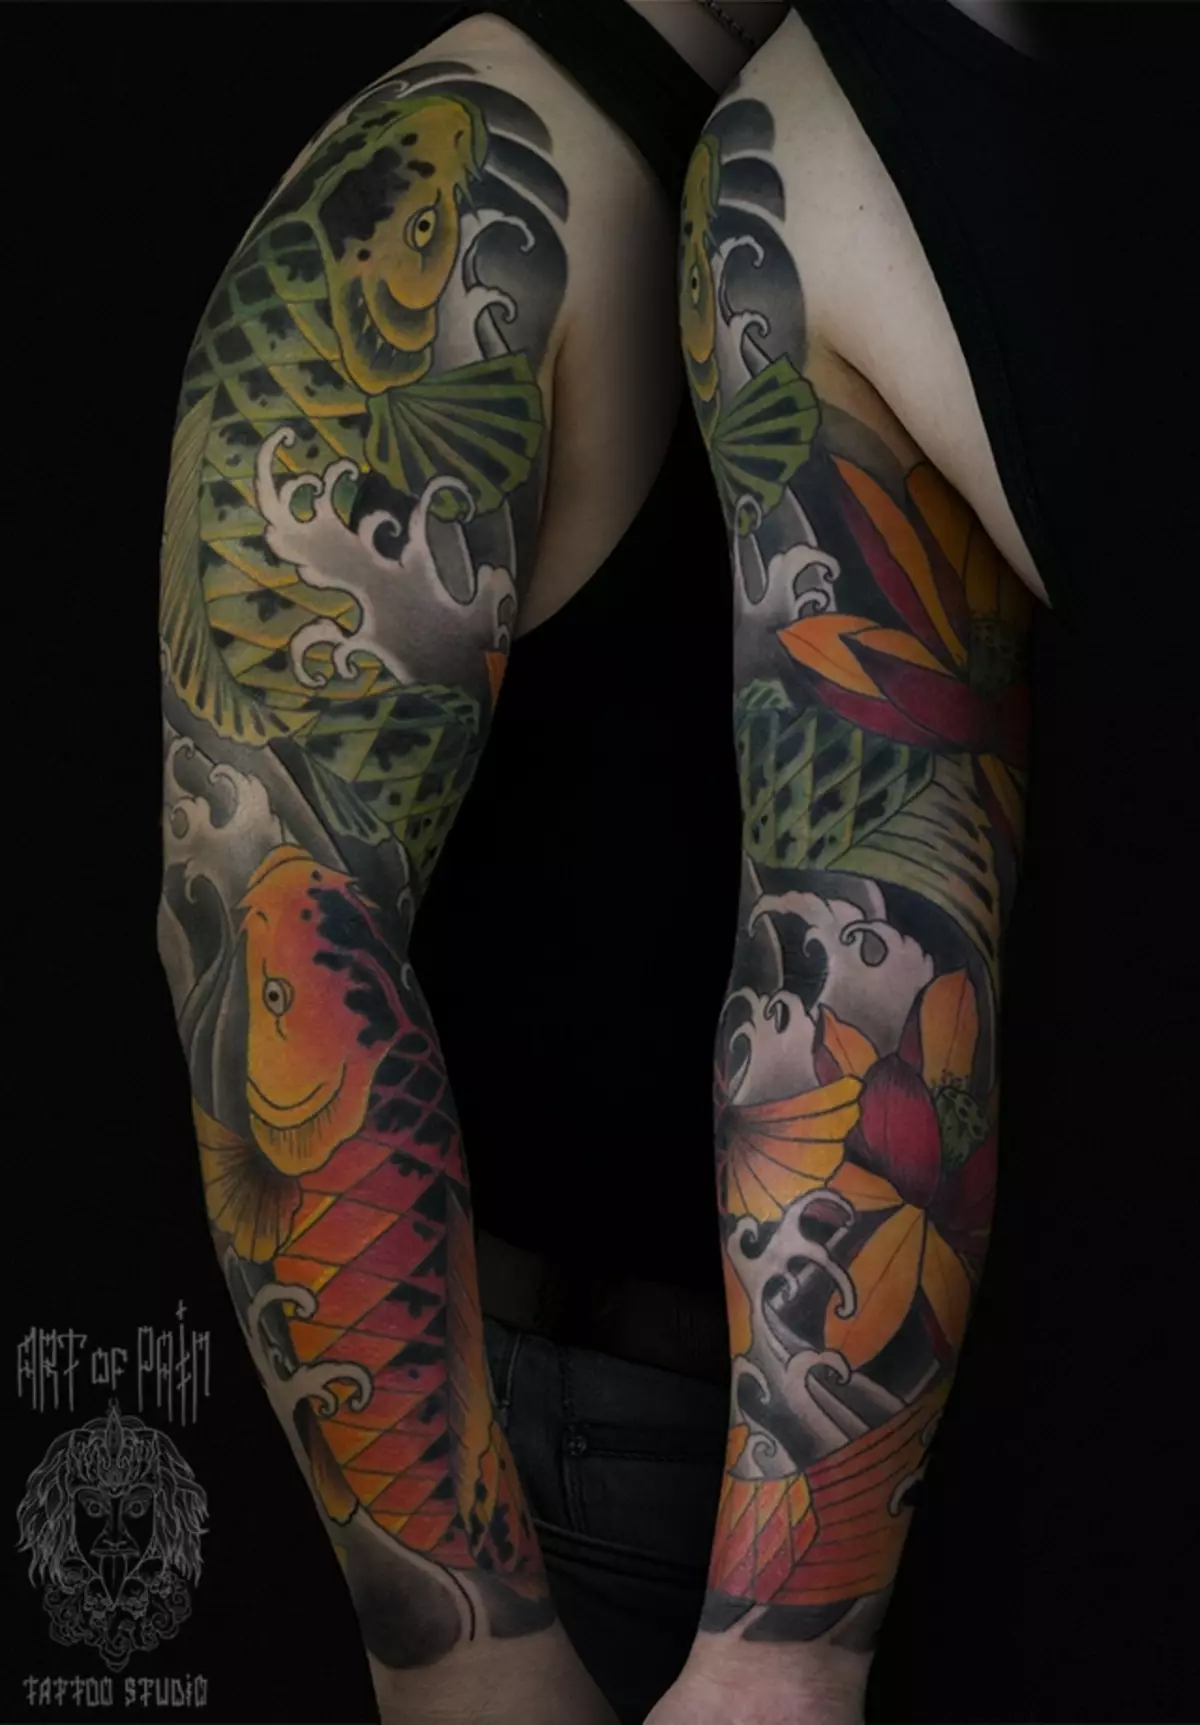 Japan Tattoo Sleeve: MaJapan tattoo makate, dema uye chena uye ane mavara. Semi-auction uye ese 